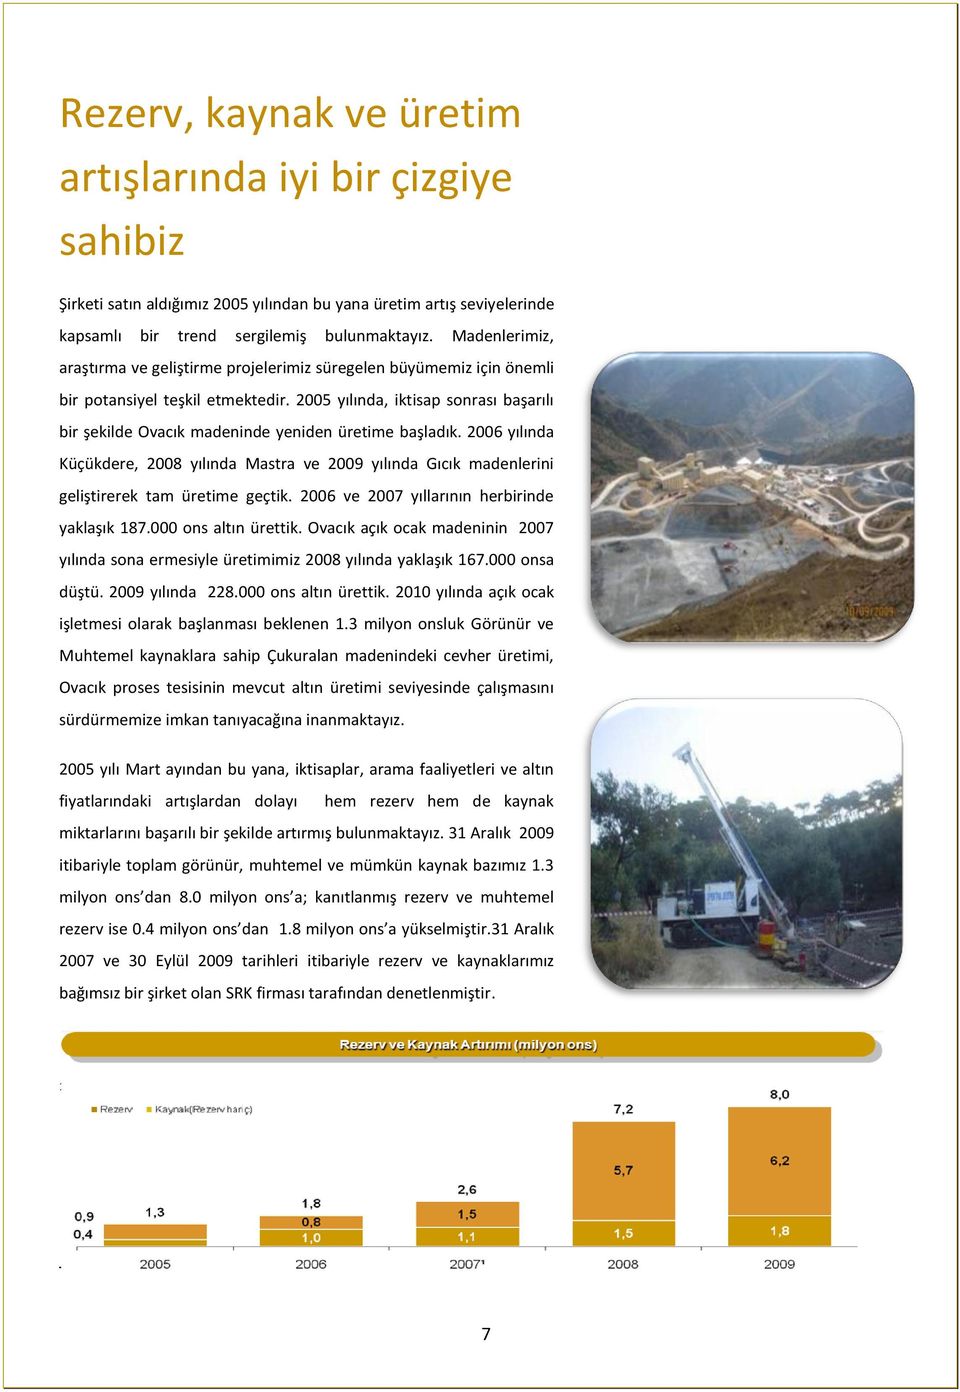 2005 yılında, iktisap sonrası başarılı bir şekilde Ovacık madeninde yeniden üretime başladık.